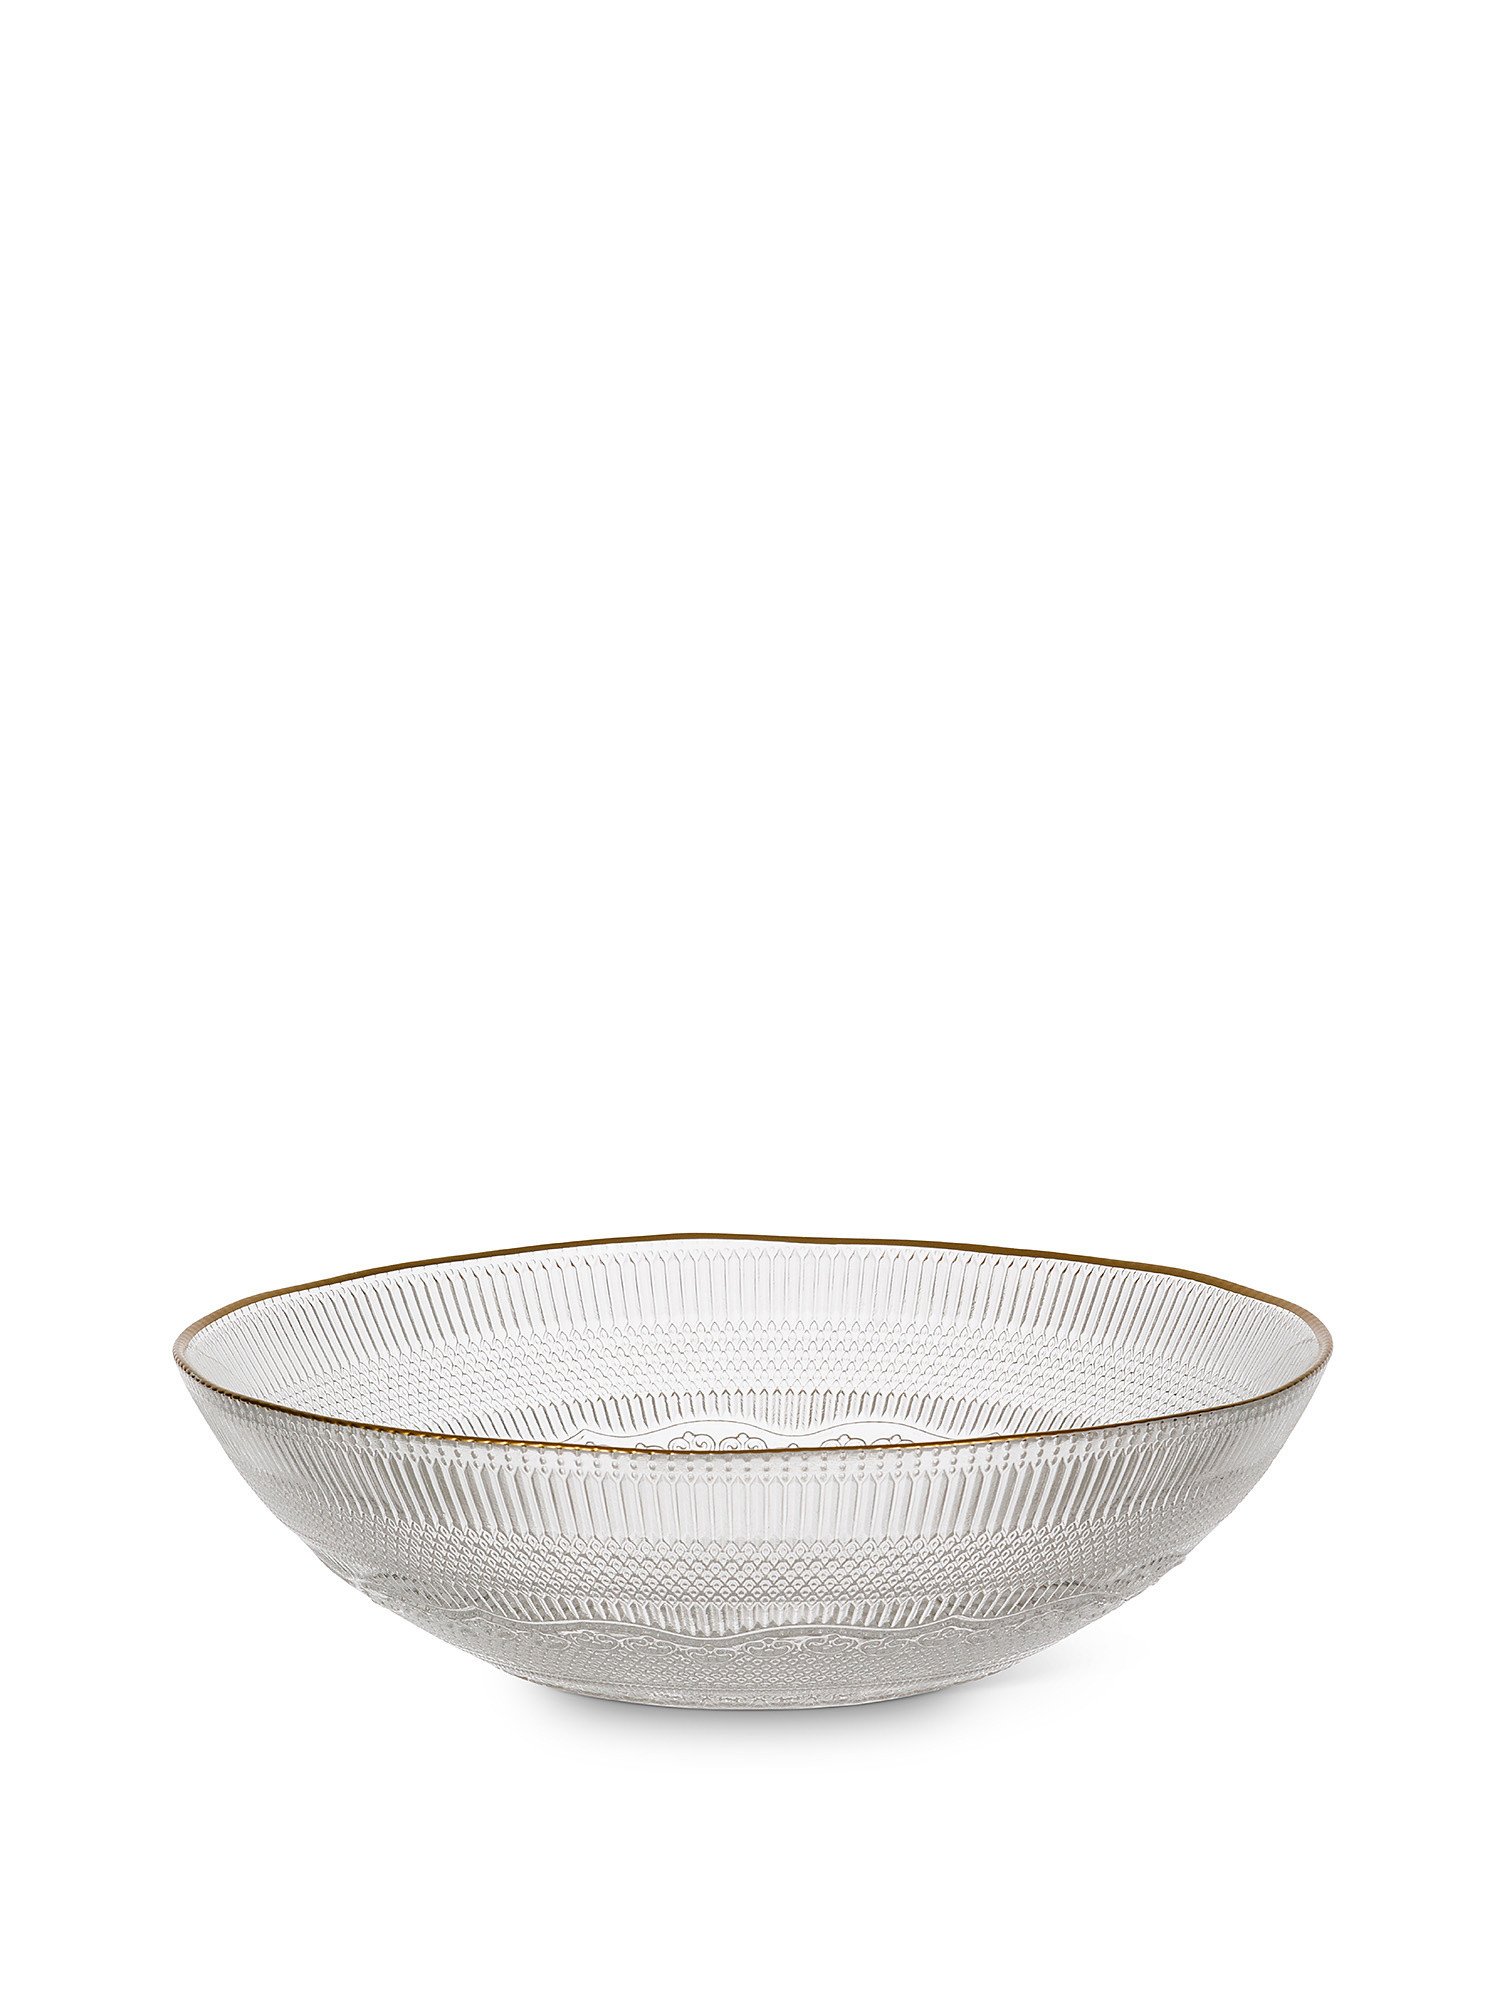 Gold edge glass salad bowl, Transparent, large image number 0